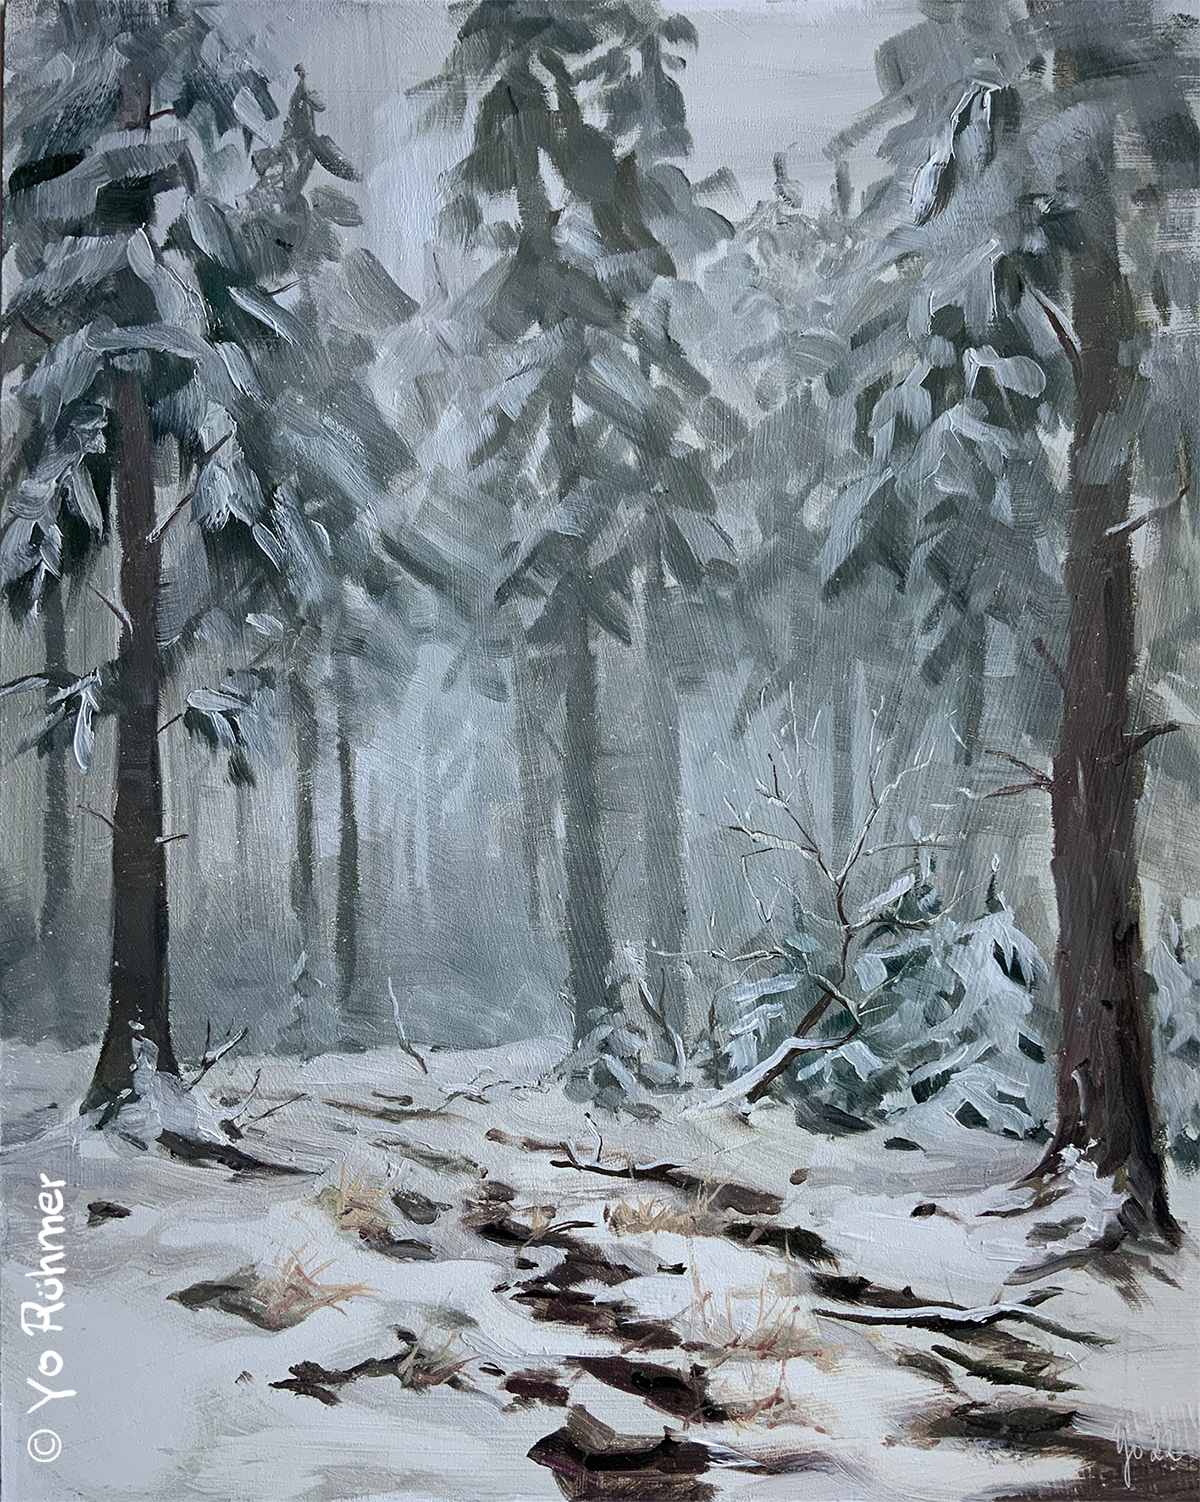 Schnee-Nebel-Ölbild-Taunus-pleinairmalerei-1086